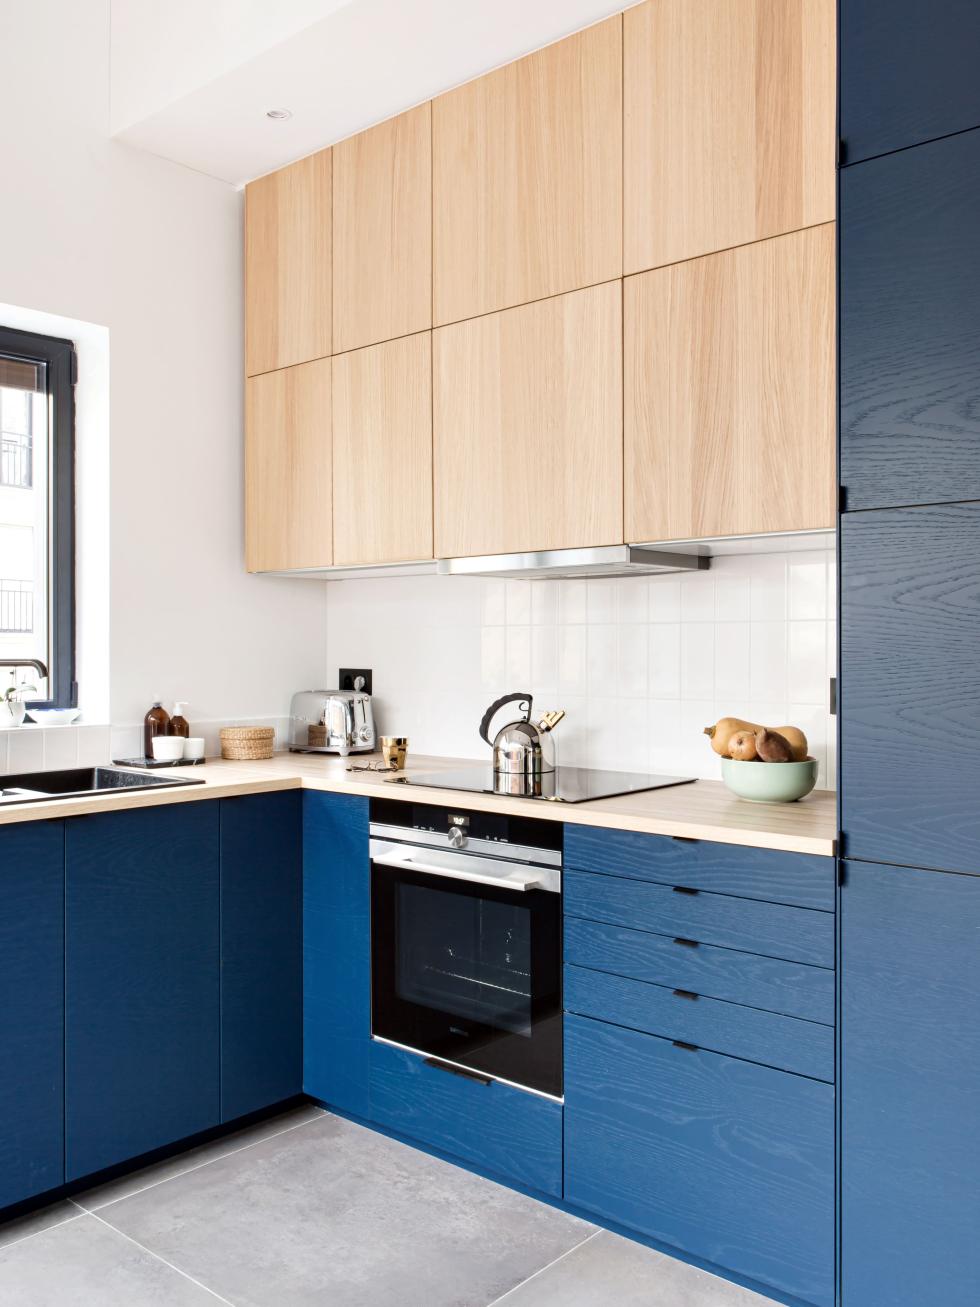 Kitchen in painted oak & blue